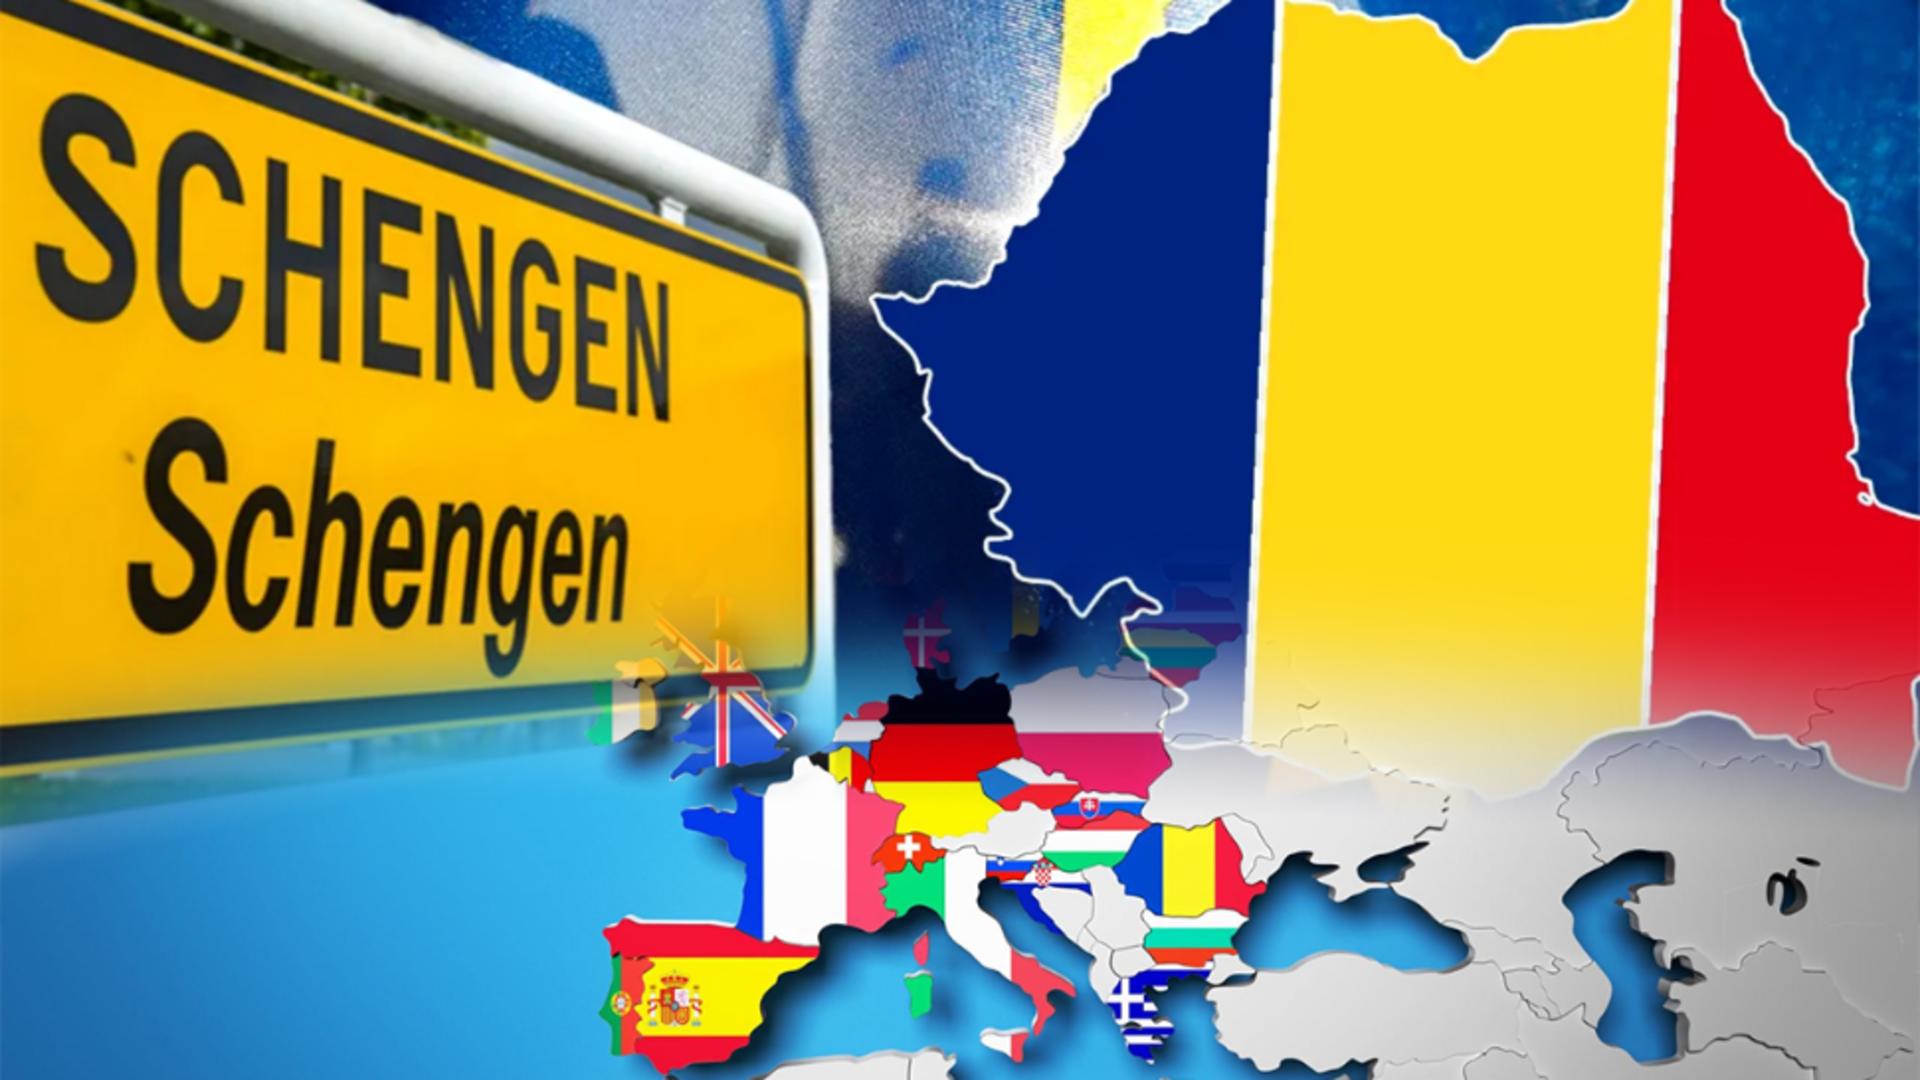 România ar putea sta în afara Schengen până în 2028. Scenariul care dă bătăi de cap românilor